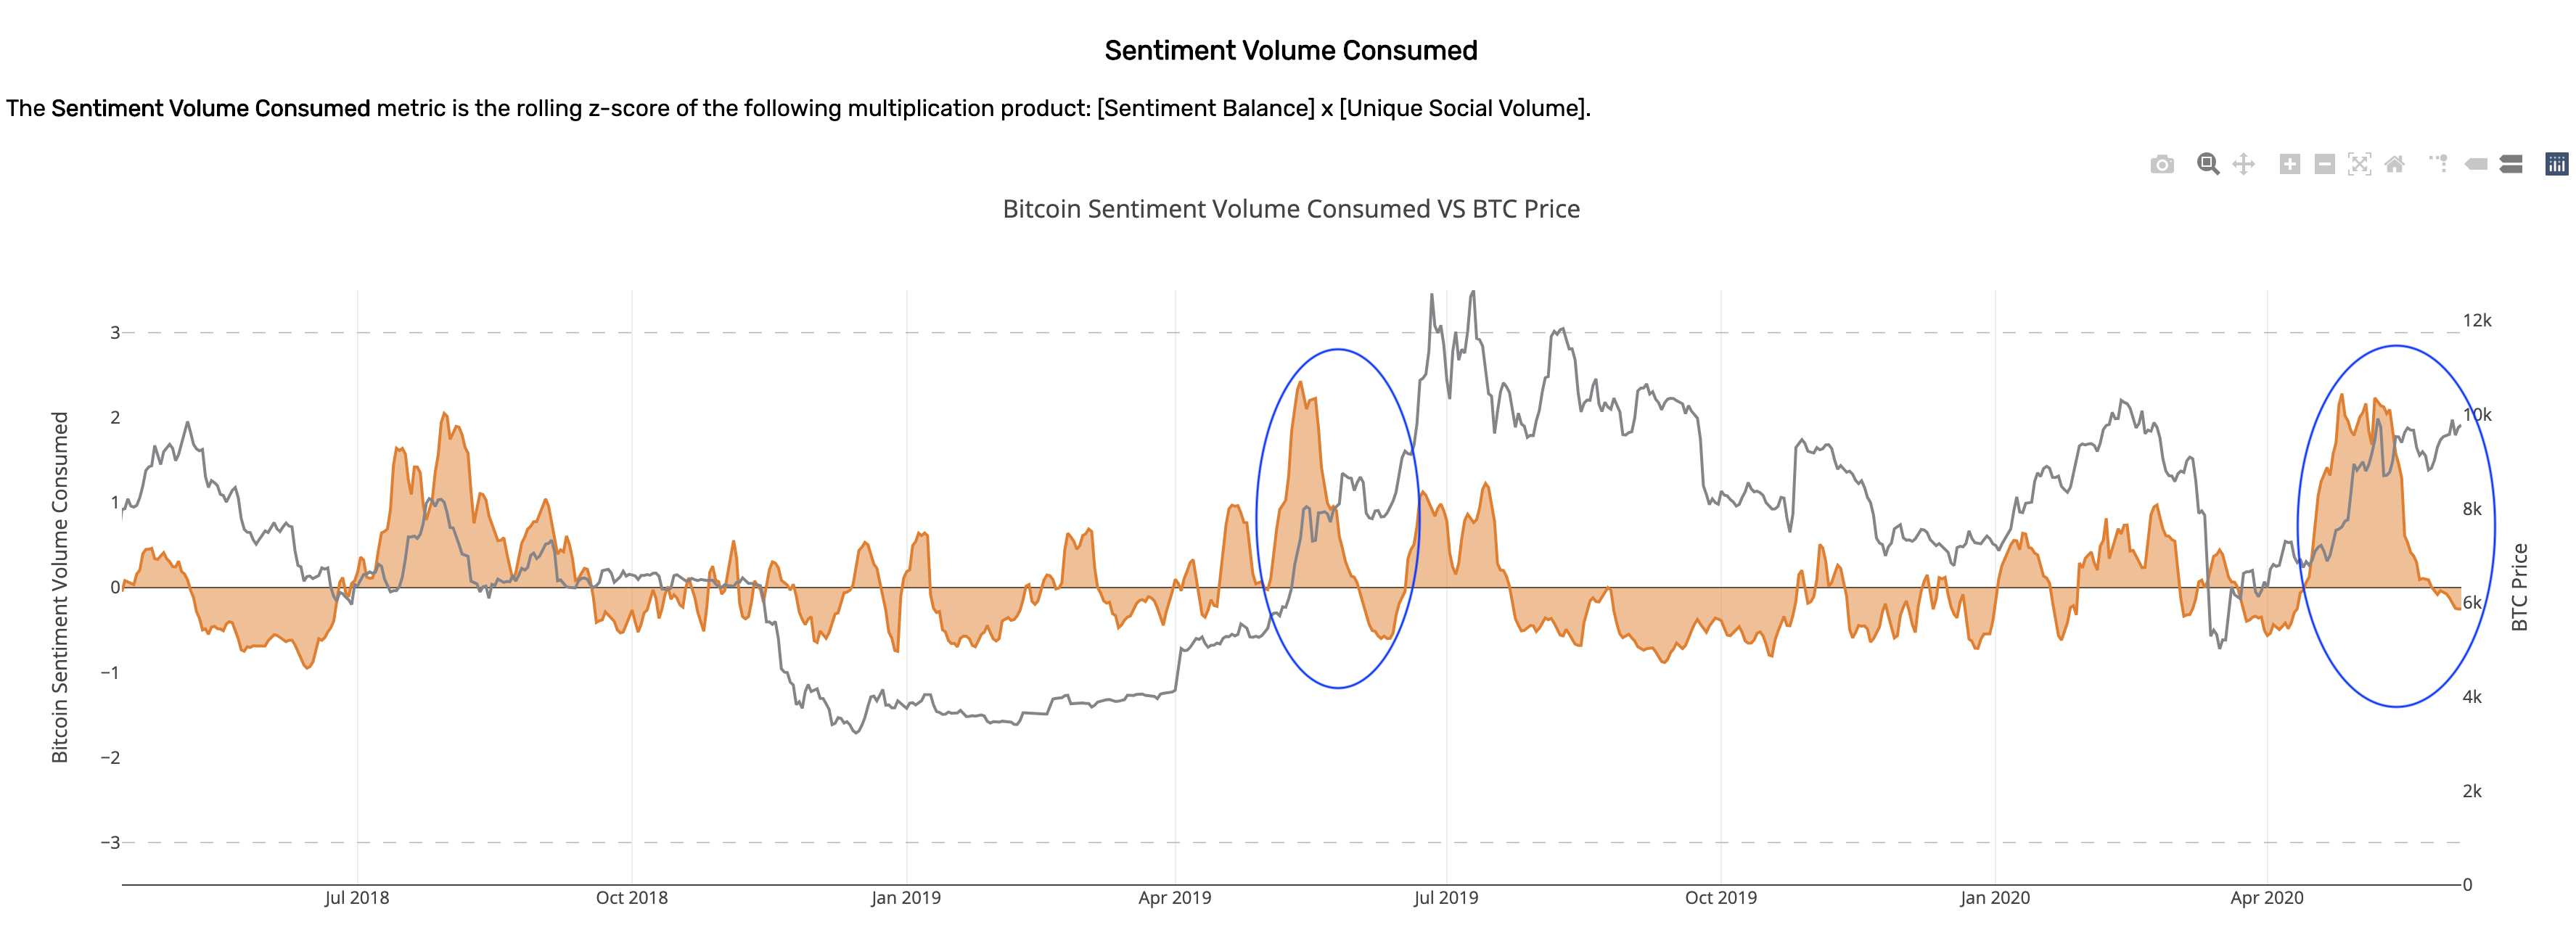 Bitcoin Sentiment Volume Consumed. (Source: Santiment)